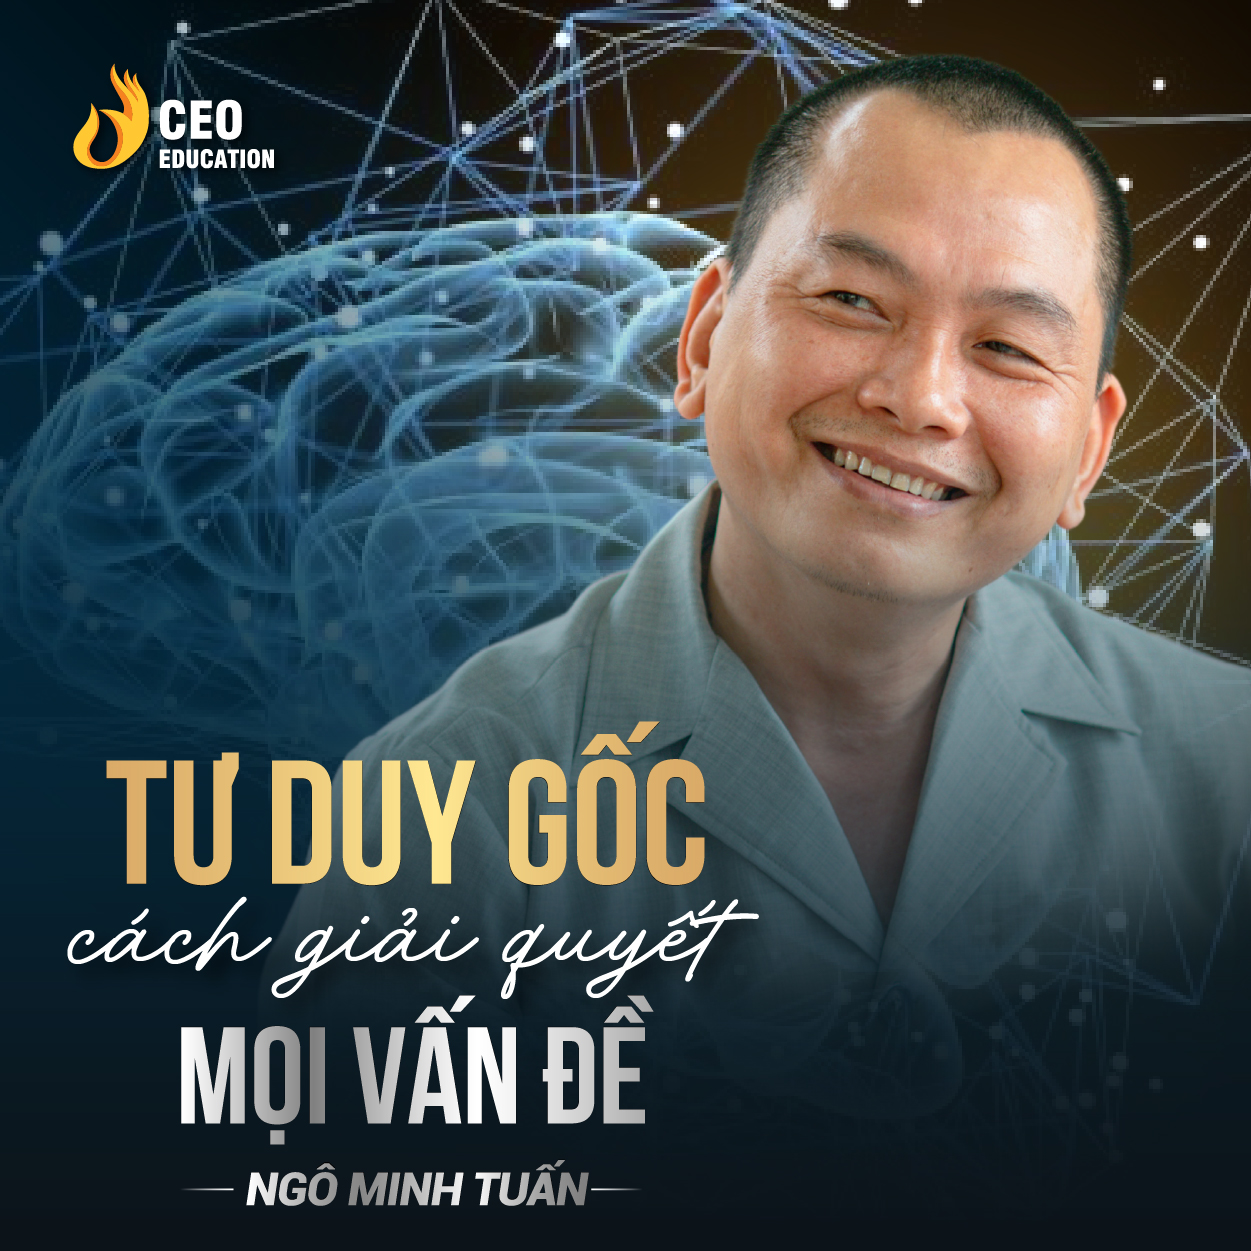 Tư duy gốc giúp bạn thay đổi cuộc đời | Ngô Minh Tuấn | Học Viện CEO Việt Nam